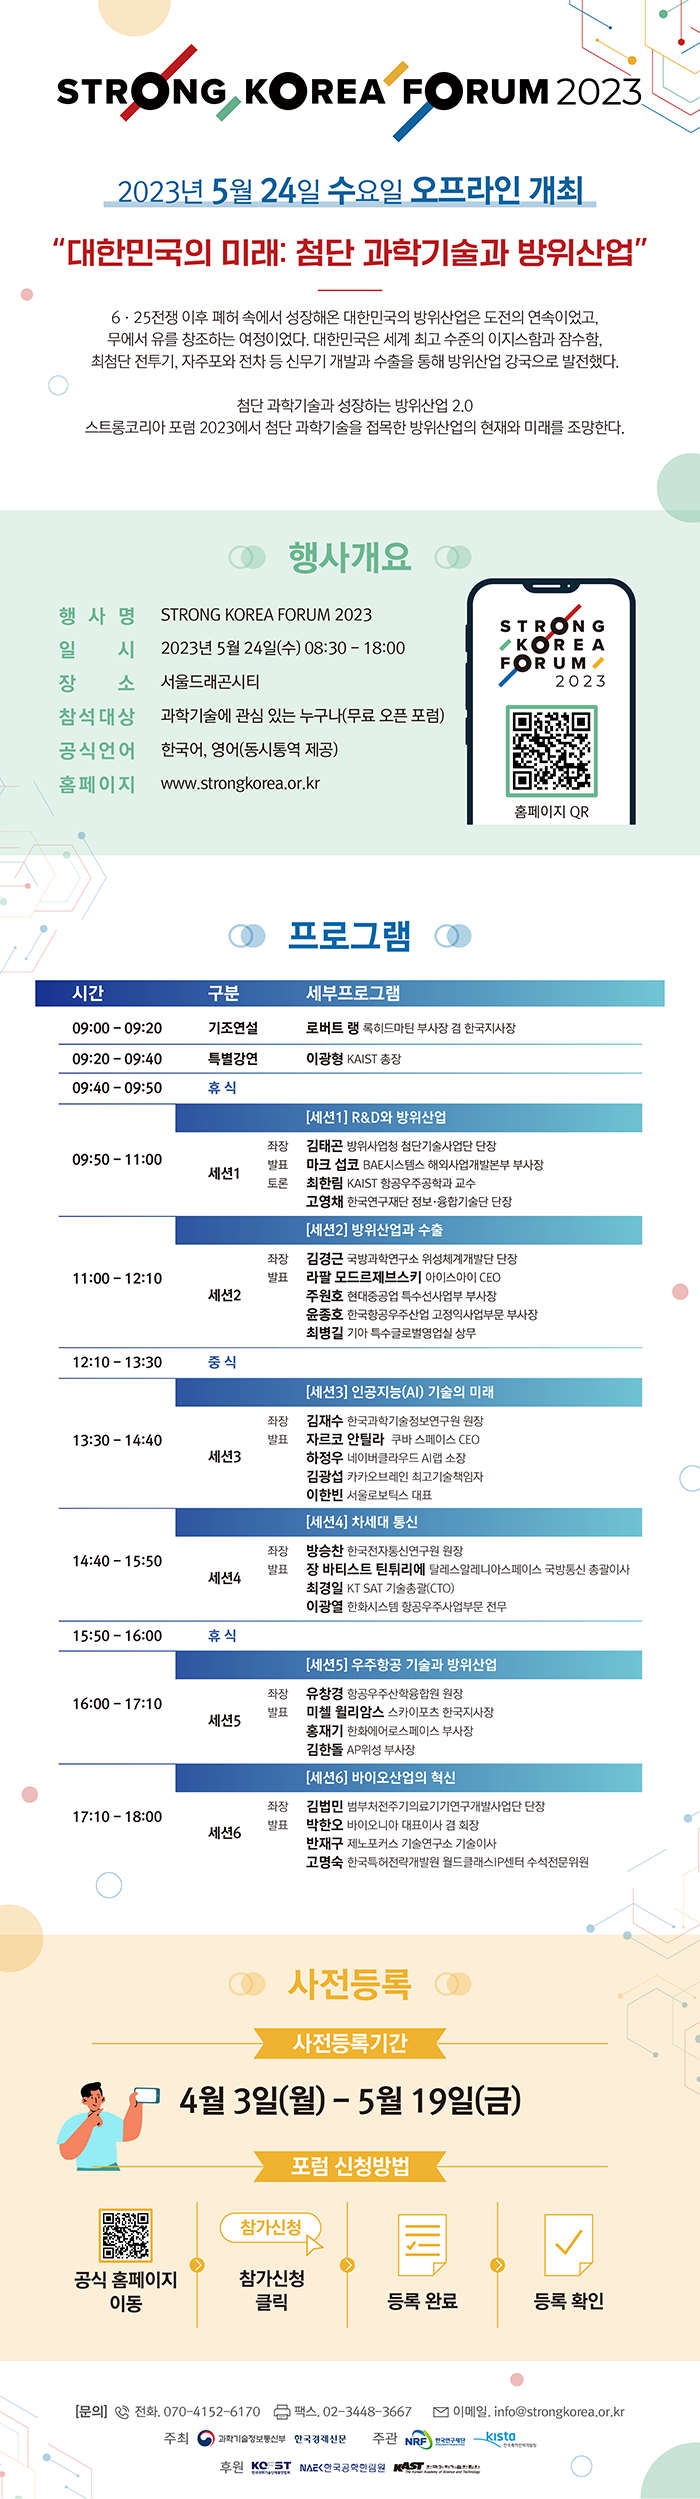 [과학기술정보통신부] STRONG KOREA FORUM 2023 (하단 내용 참조)